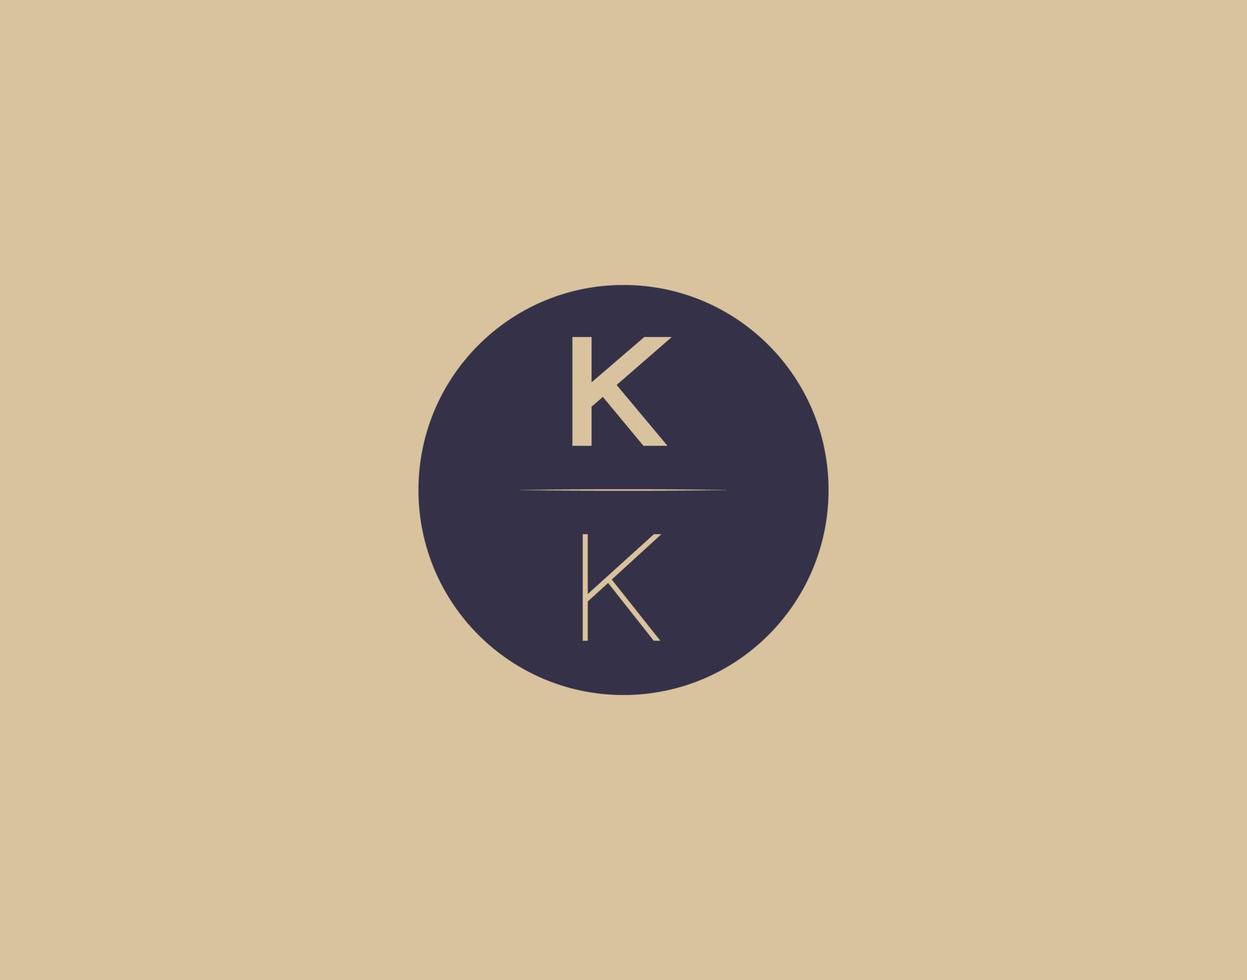 KK letter modern elegant logo design vector images